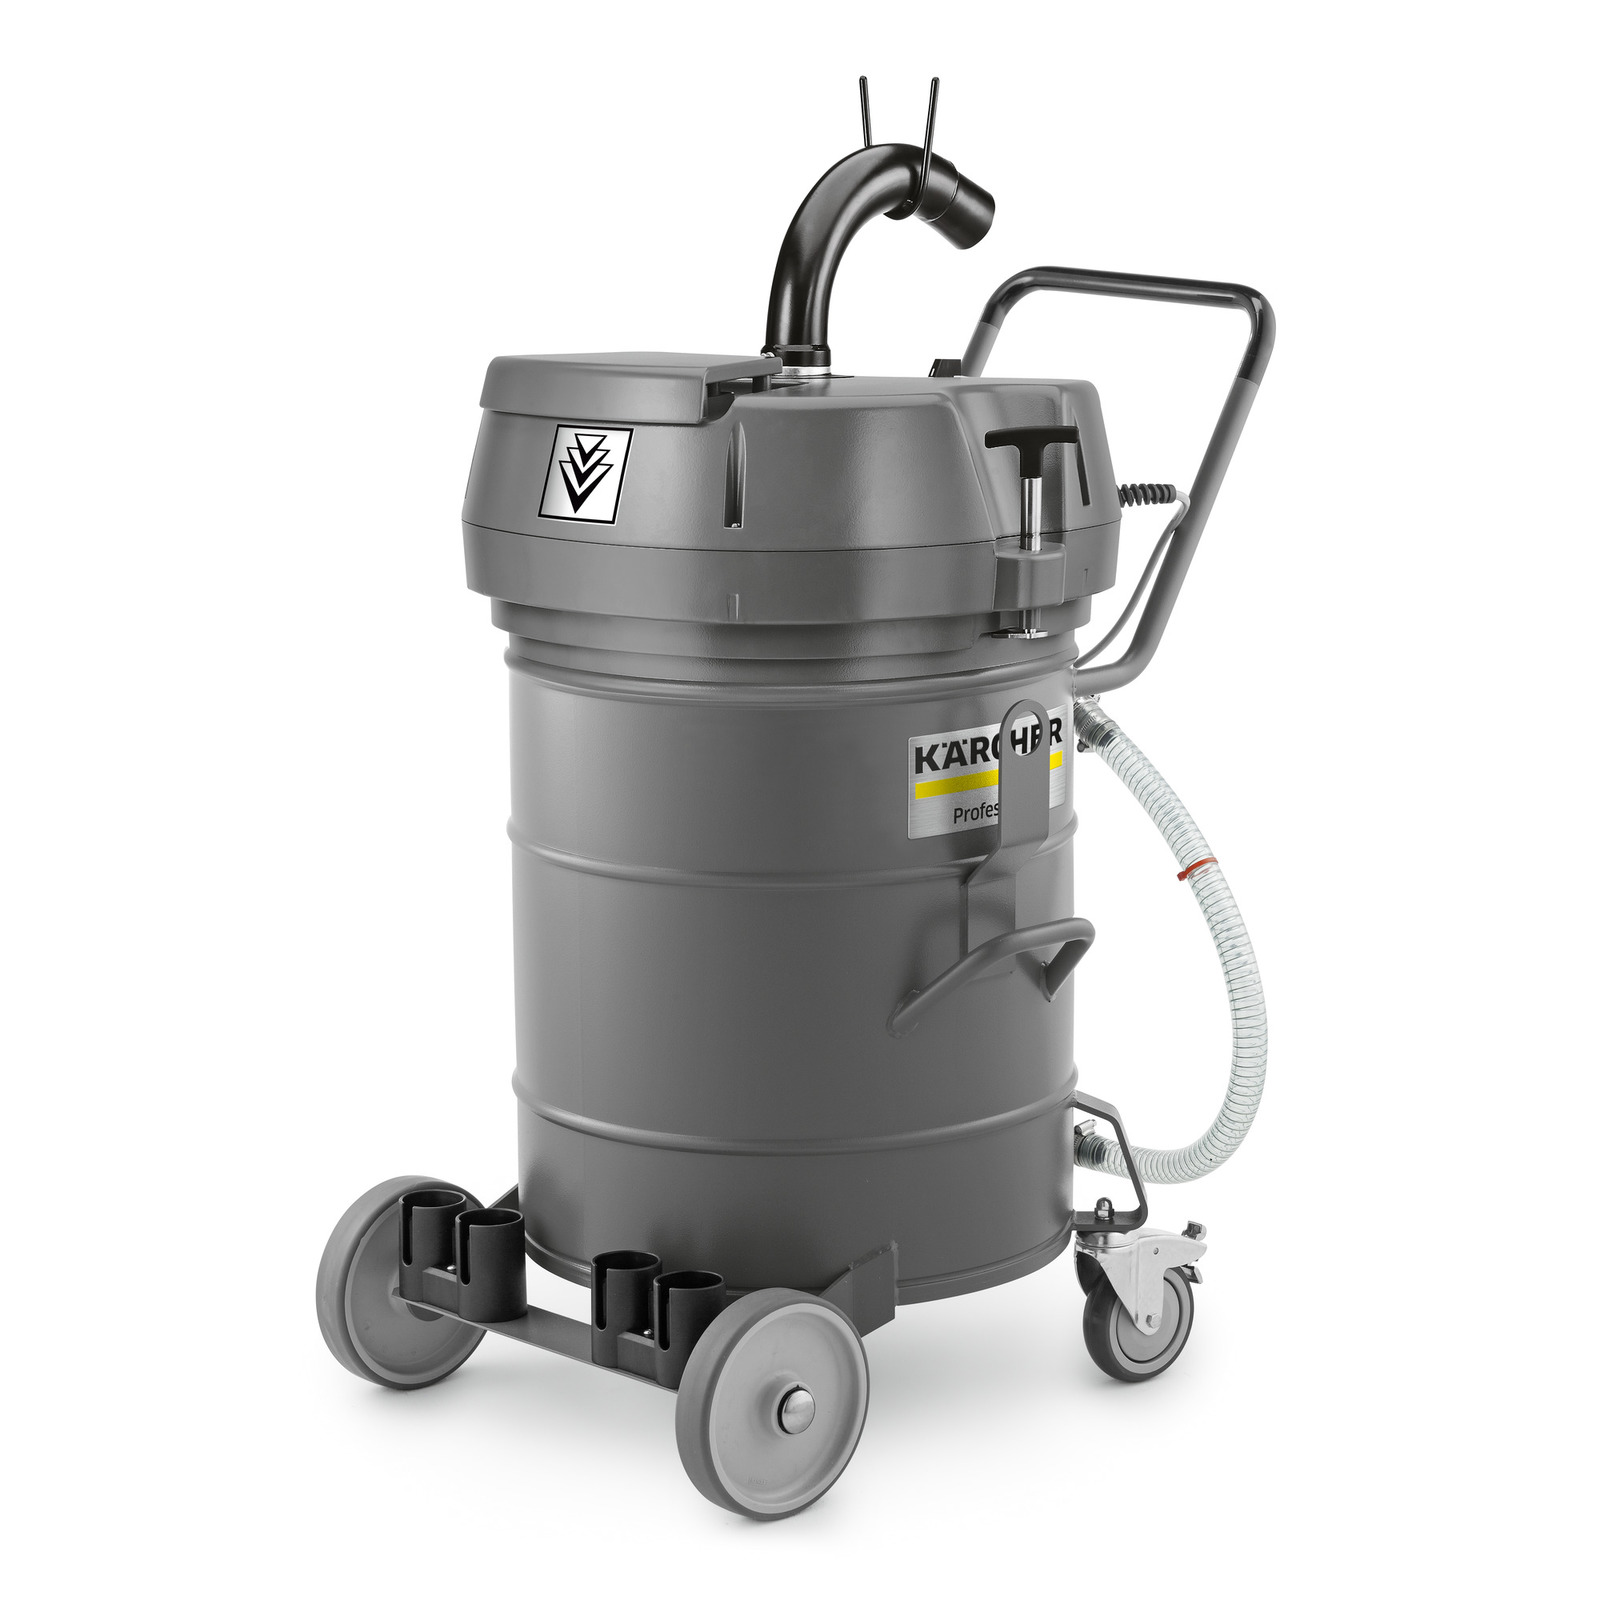 Karsher Industrial Water Vacuum cleaner